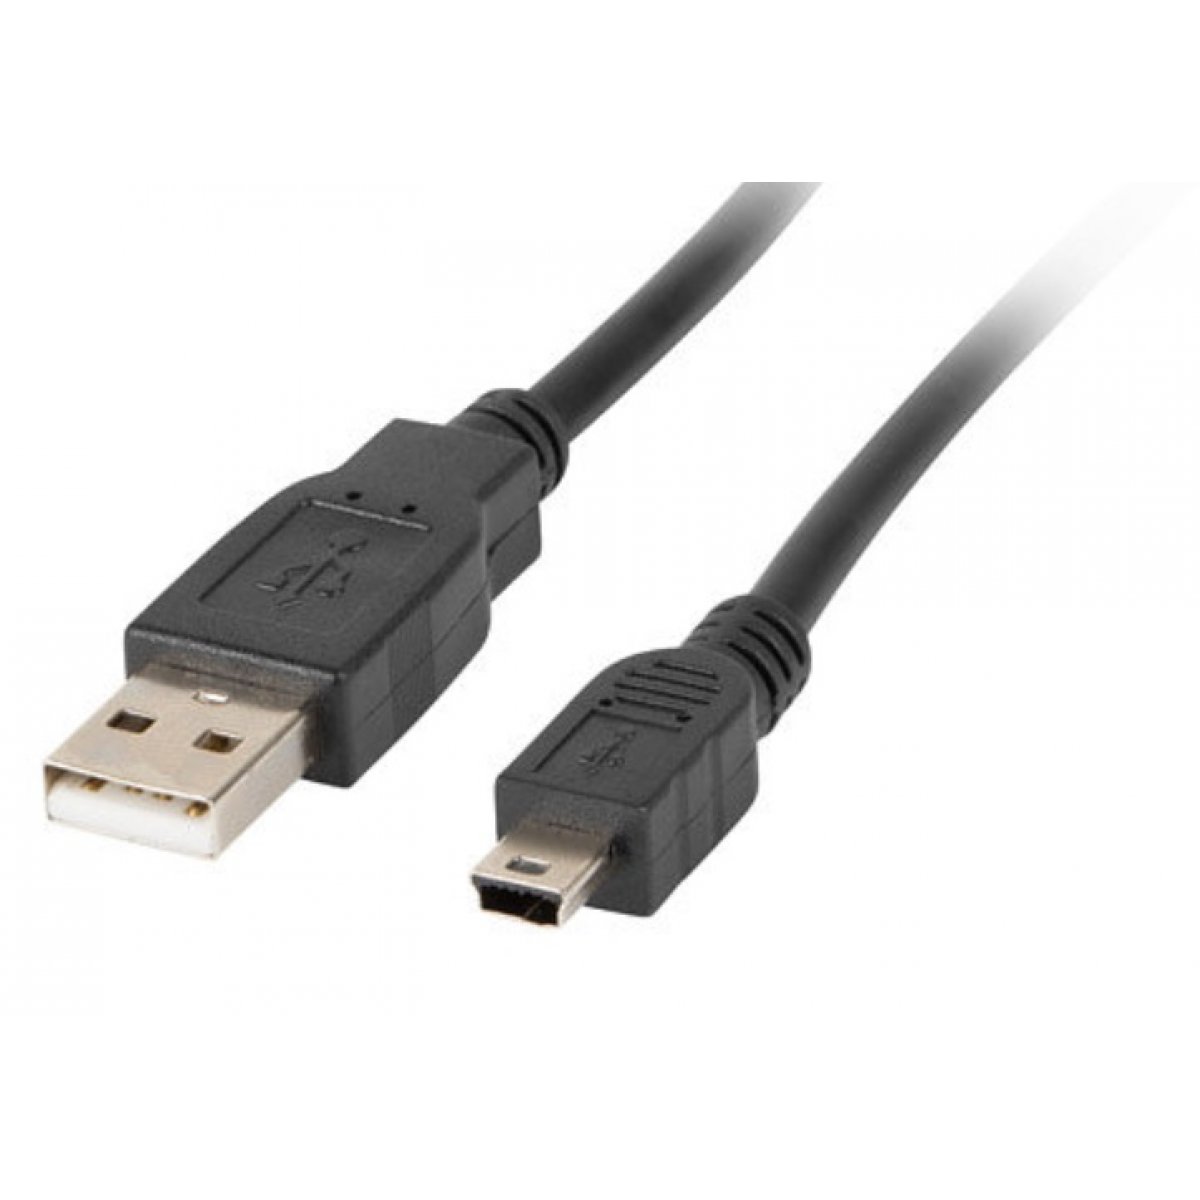 CABLE USB A/M - MINI USB A/M (5P) (1.8M) LANBERG